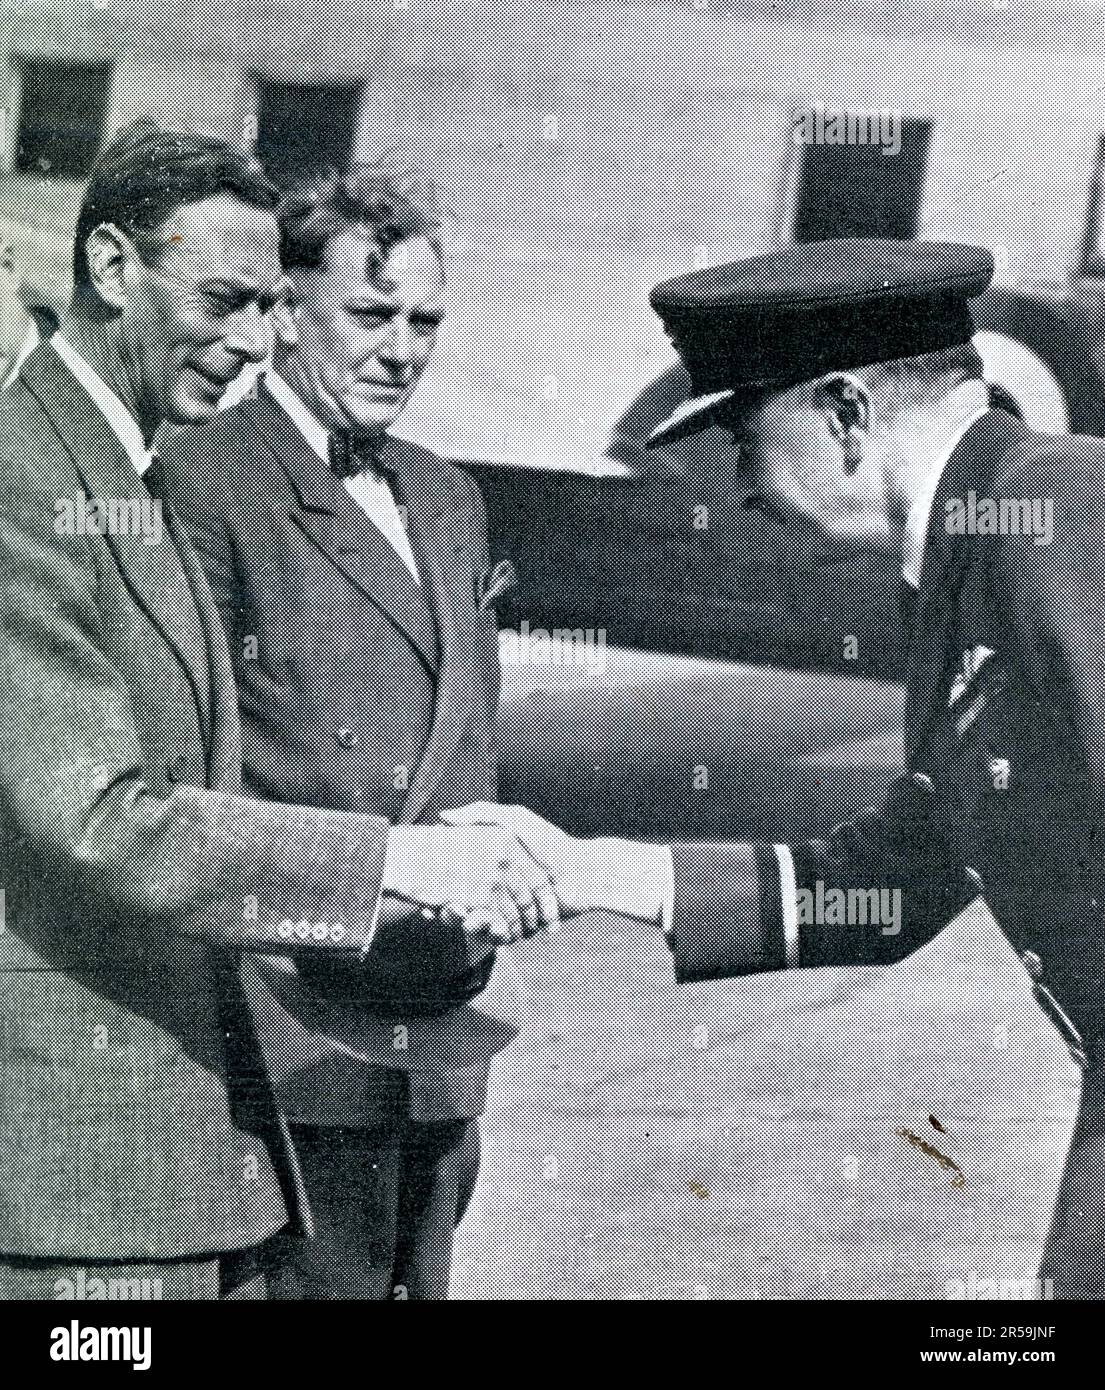 Am 8. September 1951 besuchte König George VI. Einen Tag lang Balmoral, wo er nach London reiste, um sich von Ärzten untersuchen zu lassen. Hier wird er am Flughafen London auf der Rückfahrt gesehen, um der königlichen Familie im Urlaub in Balmoral, Schottland, Großbritannien, beizutreten Dieses Pressefoto wurde nur wenige Monate vor dem frühen Tod des Königs im Februar 1952 aufgenommen, im Alter von nur 56 Jahren. Stockfoto